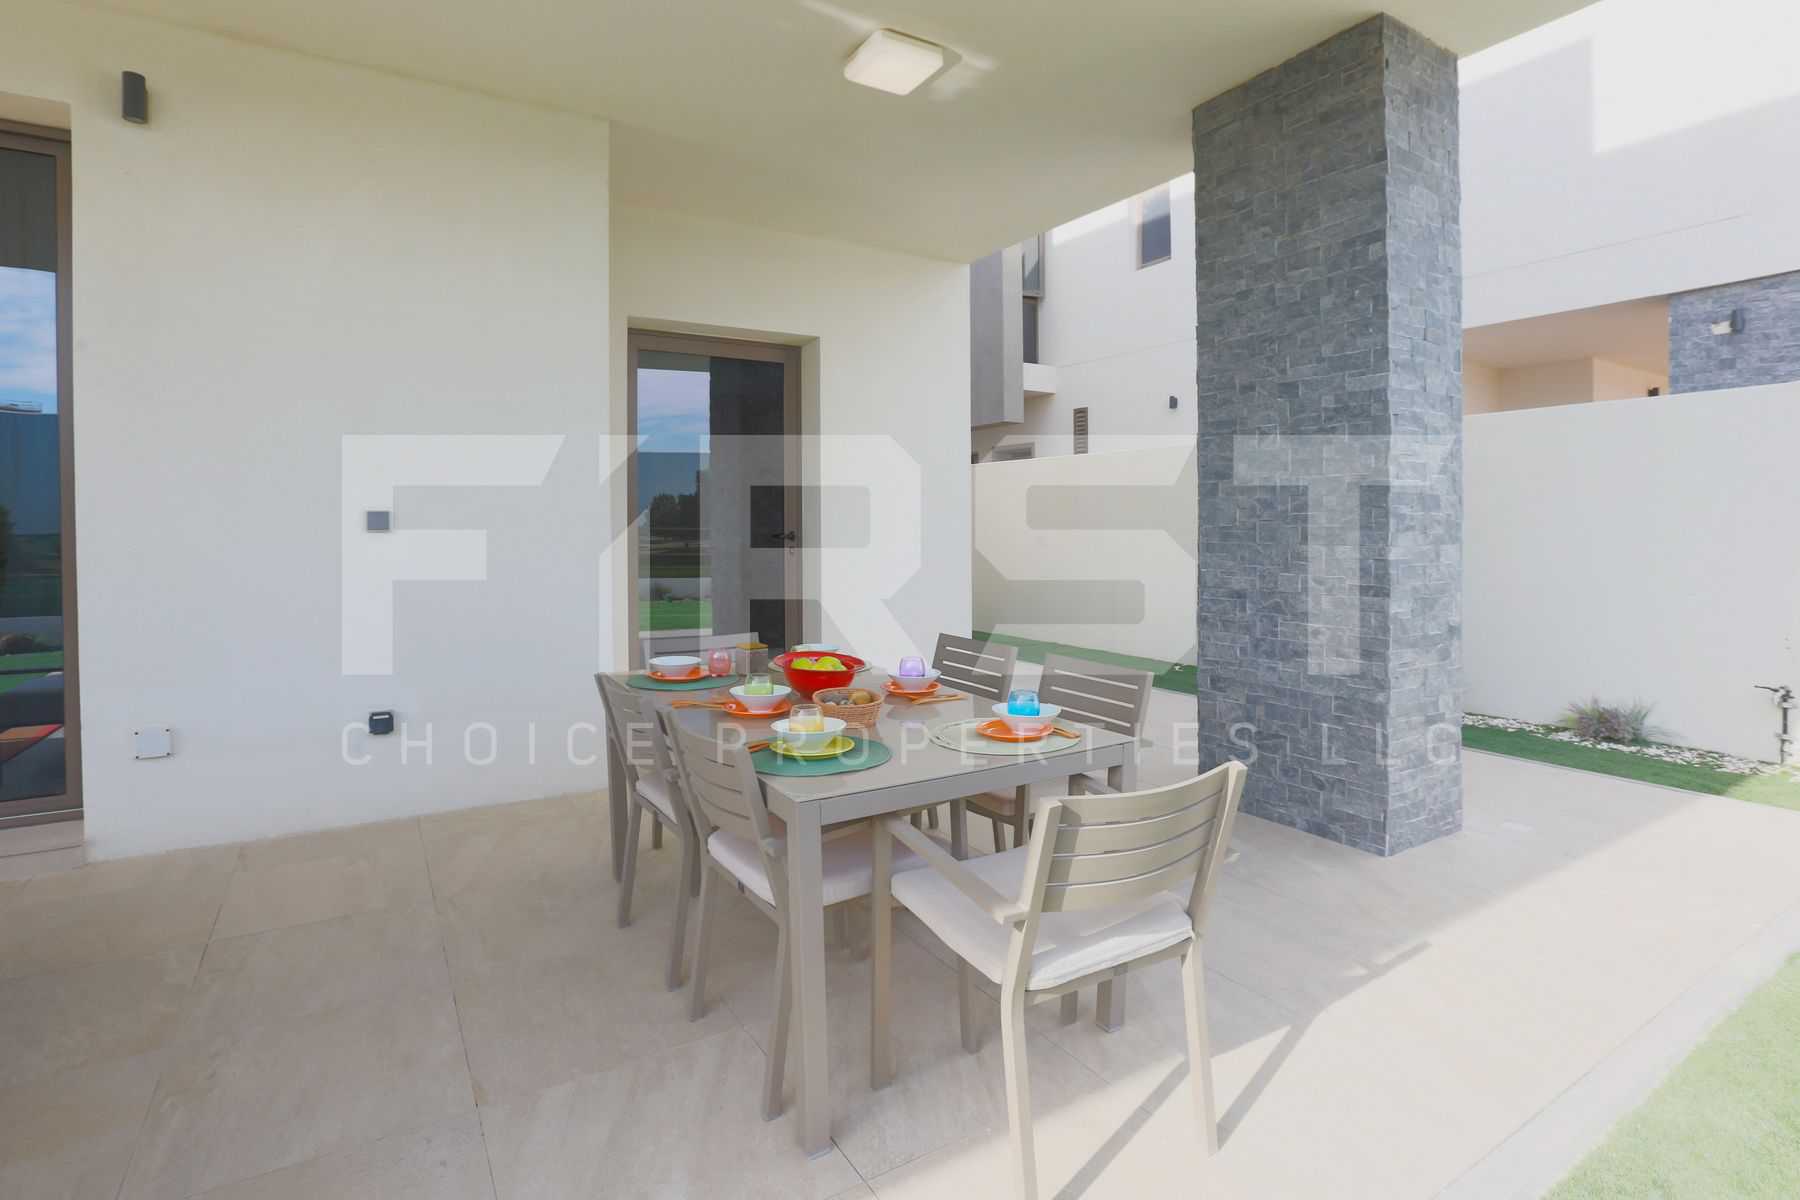 External Photo of 4 Bedroom Villa Type 4F in Yas Acres Yas Island Abu Dhabi UAE (5).jpg